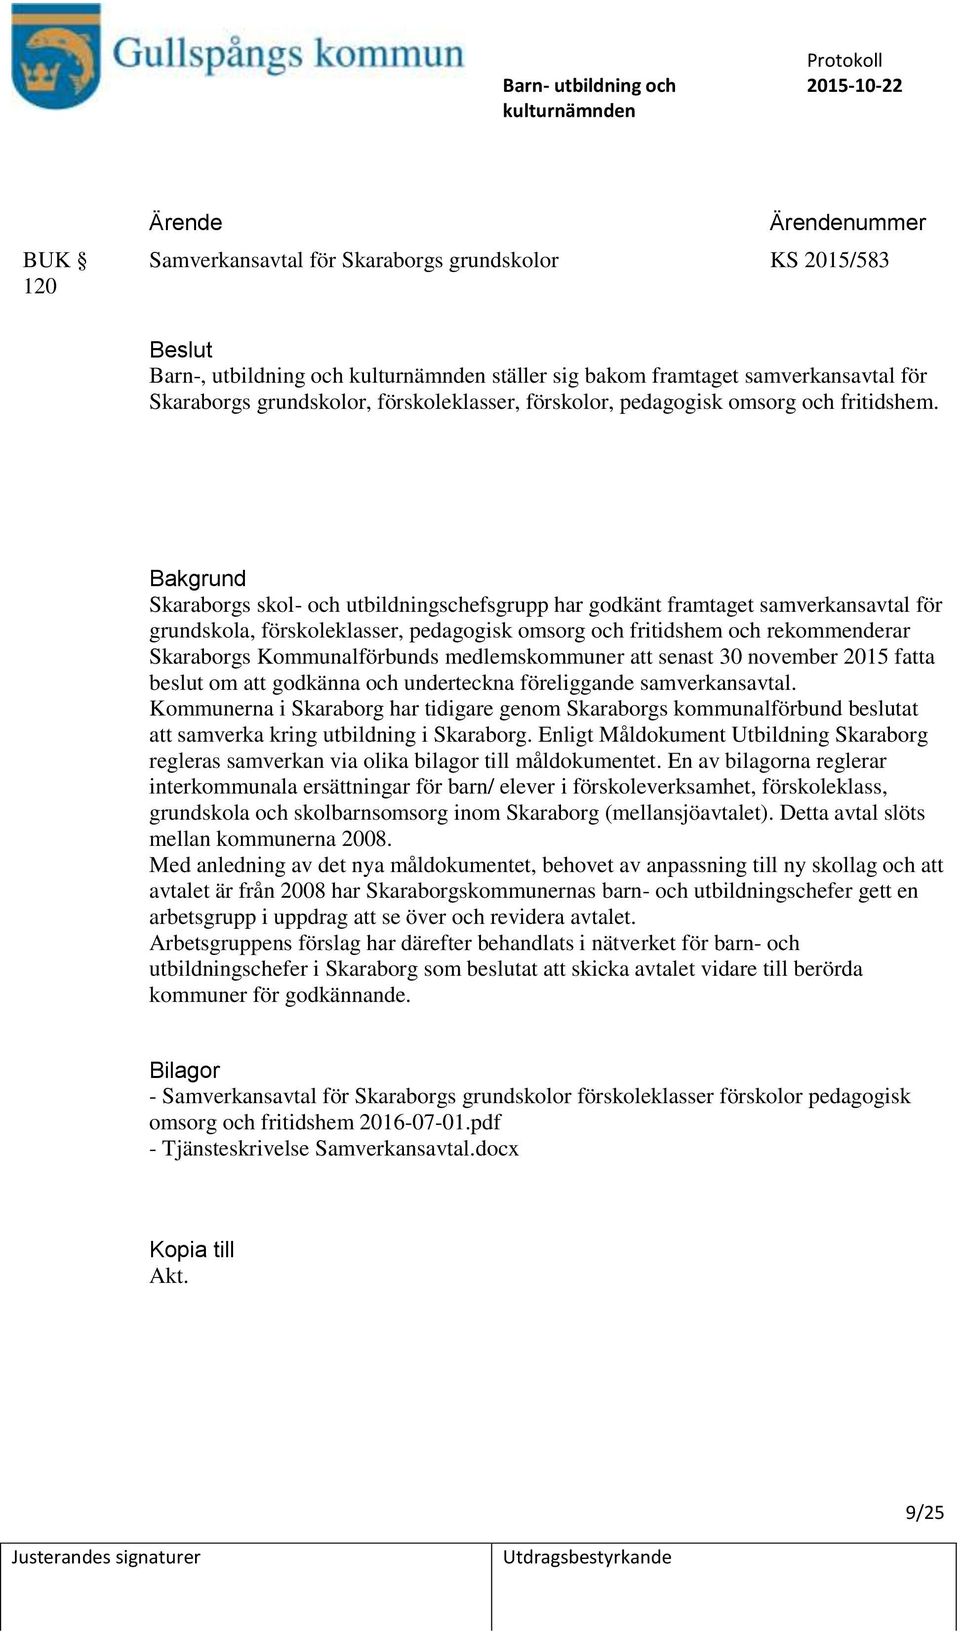 Skaraborgs skol- och utbildningschefsgrupp har godkänt framtaget samverkansavtal för grundskola, förskoleklasser, pedagogisk omsorg och fritidshem och rekommenderar Skaraborgs Kommunalförbunds